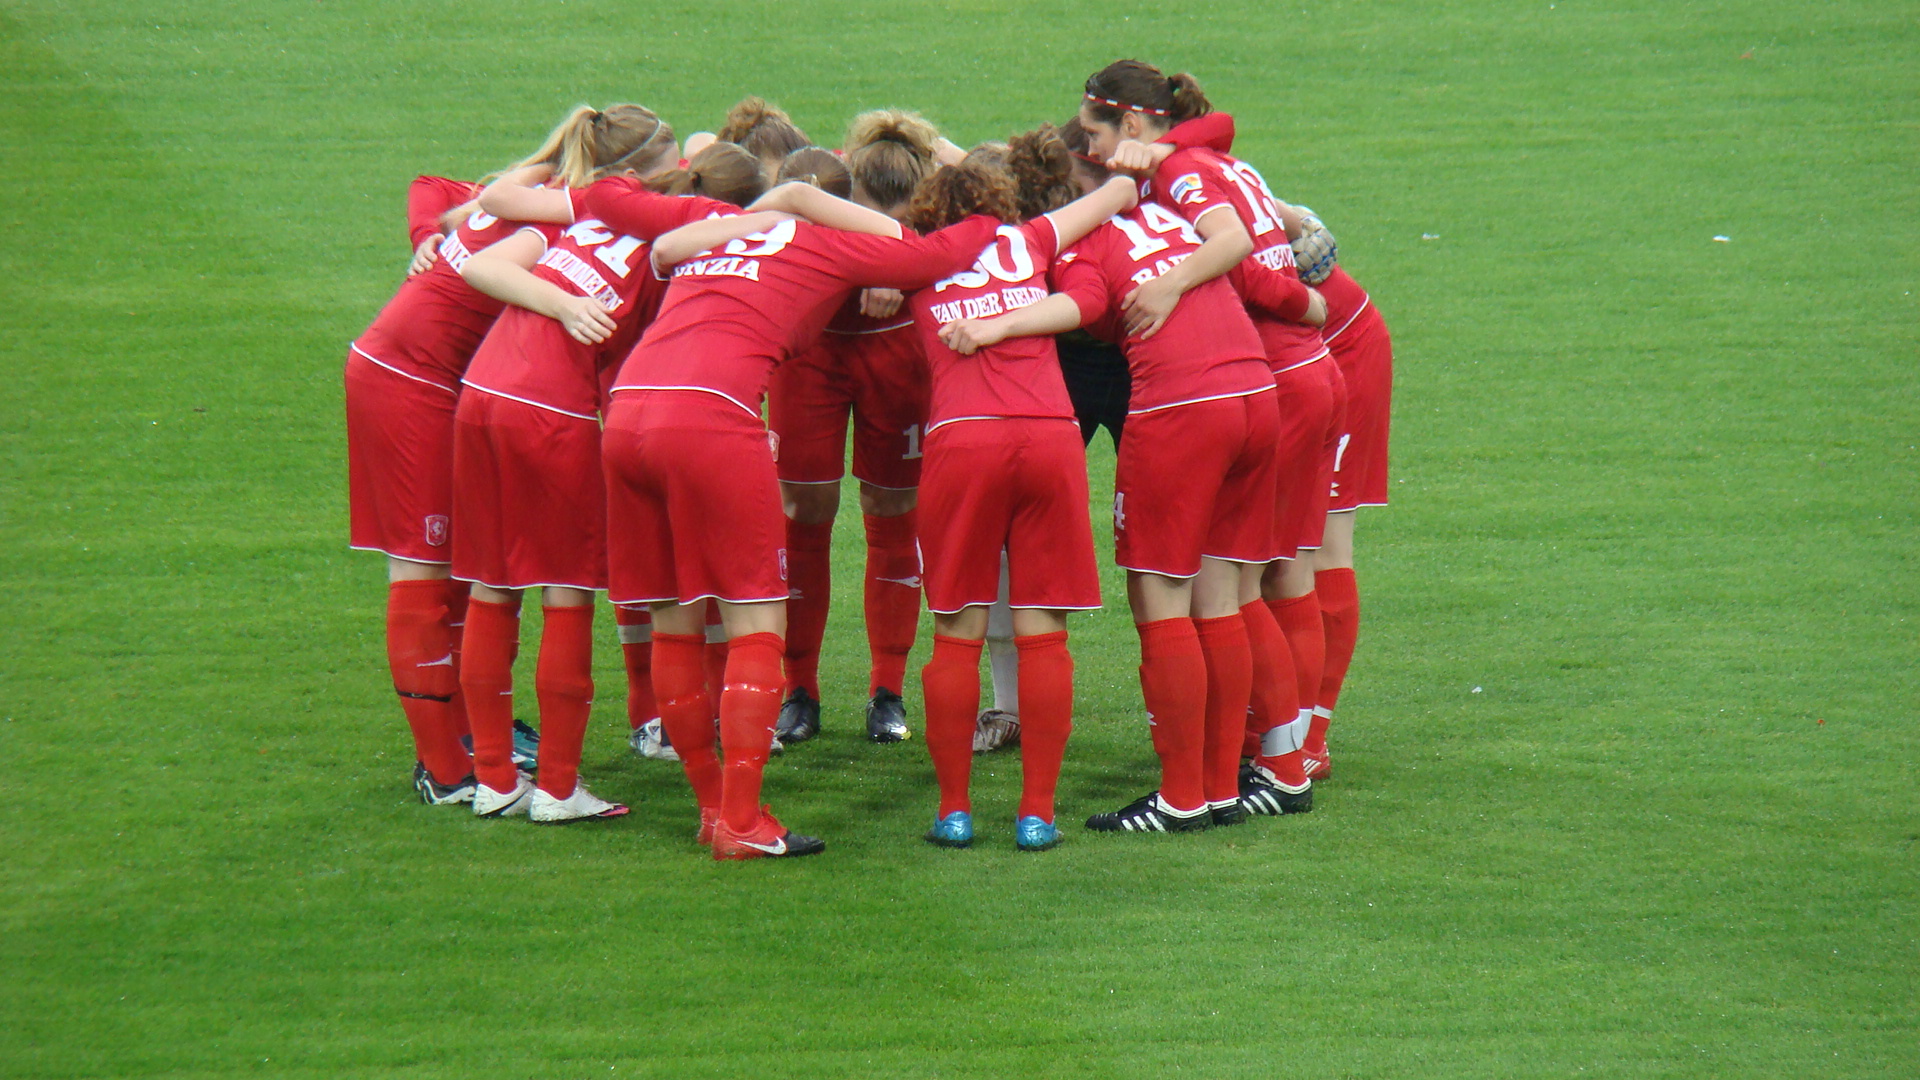 FC Twente women's